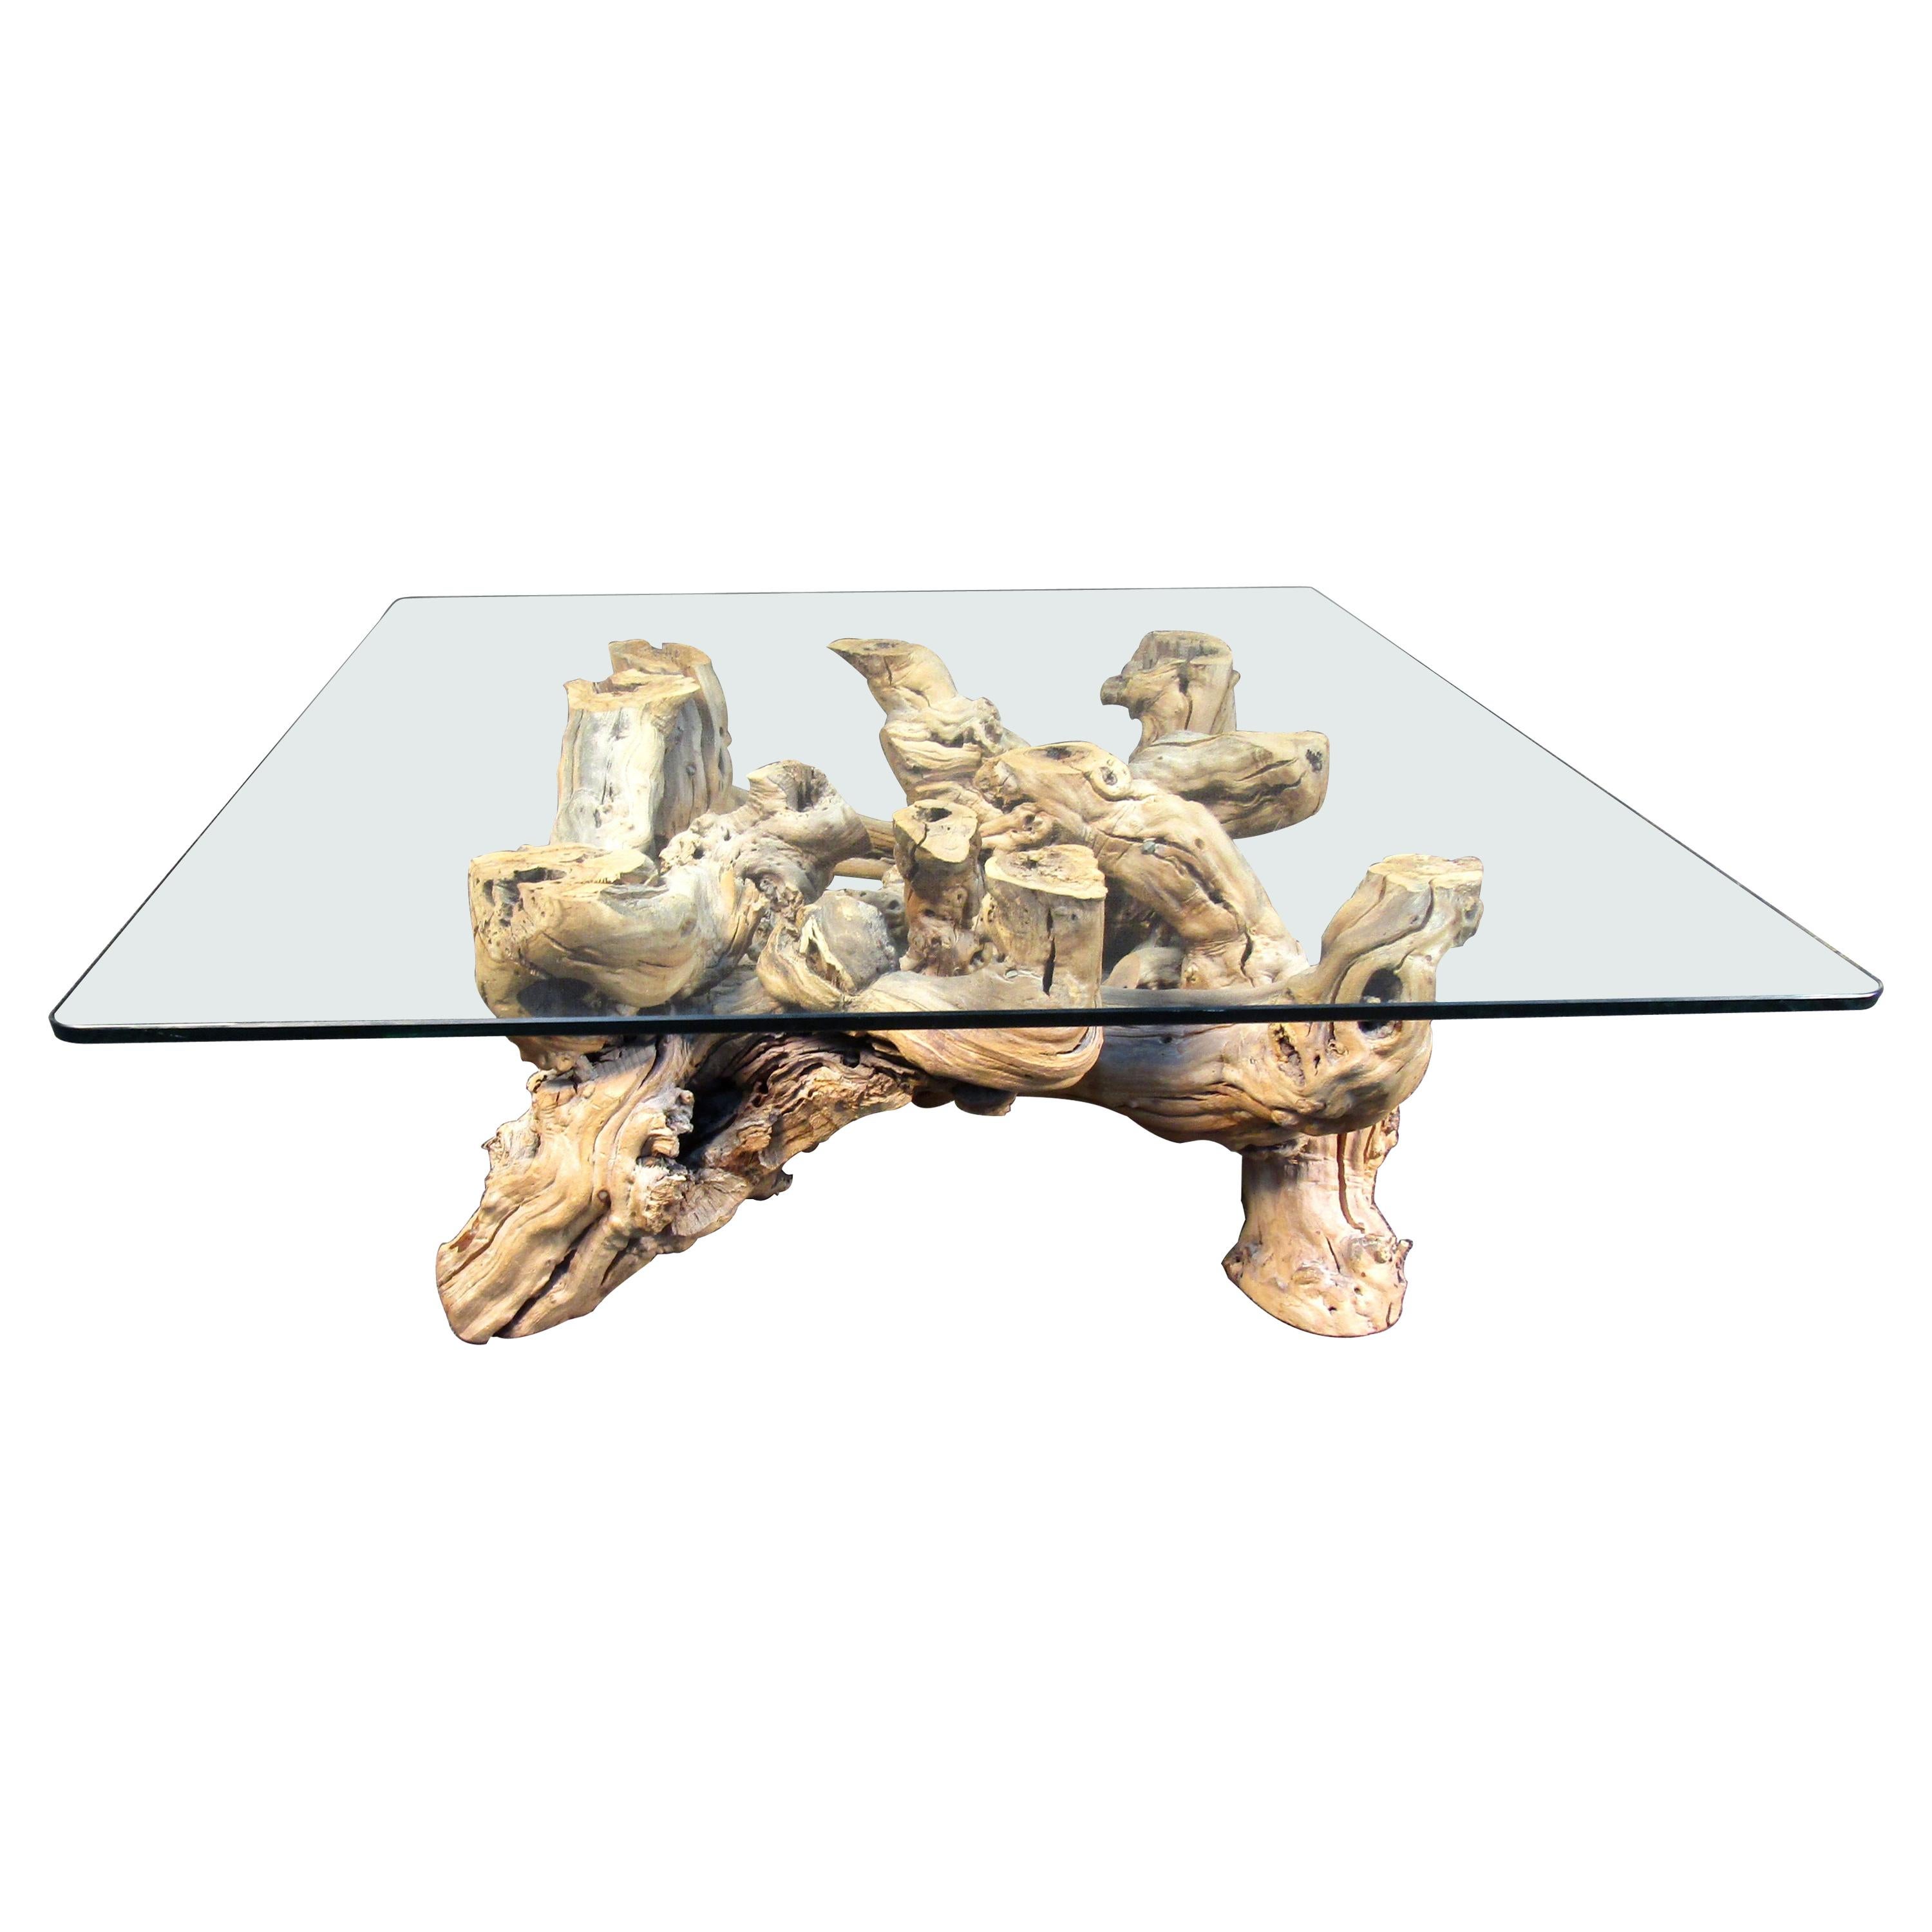 Table basse vintage en bois flotté avec plateau en verre